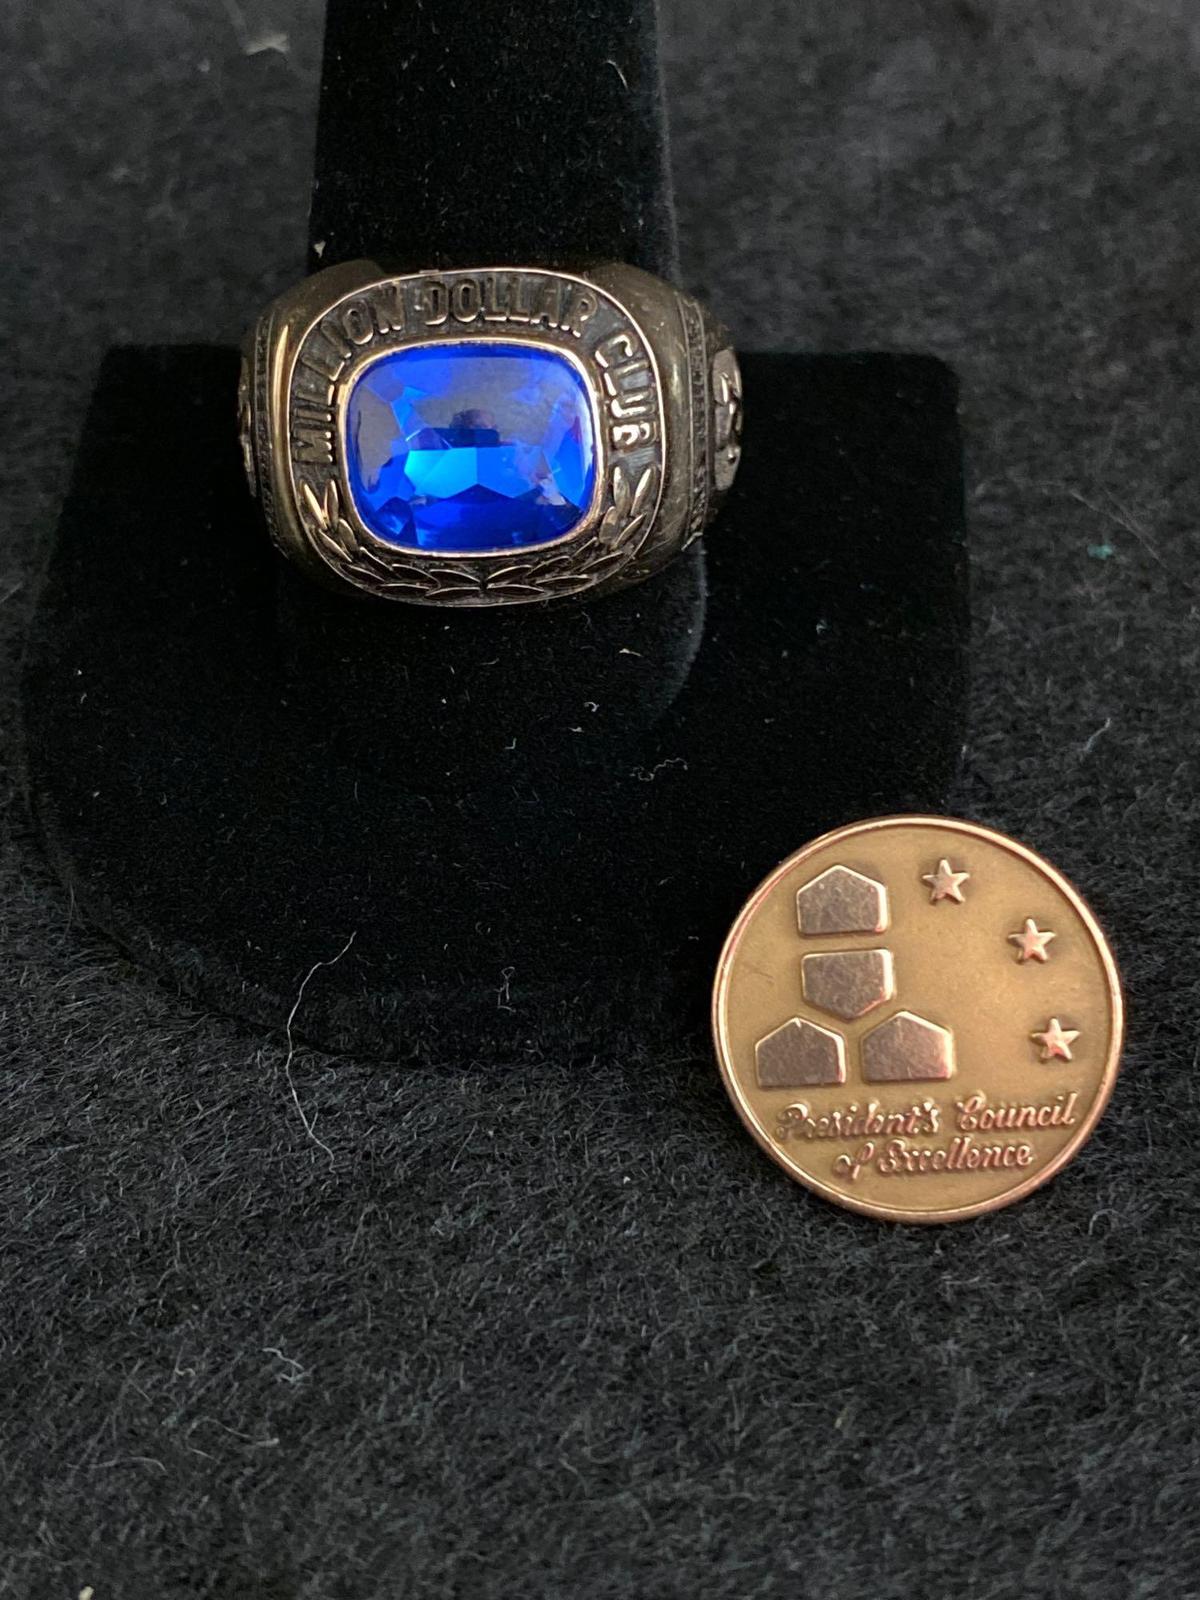 10K Award ring and pin 28g